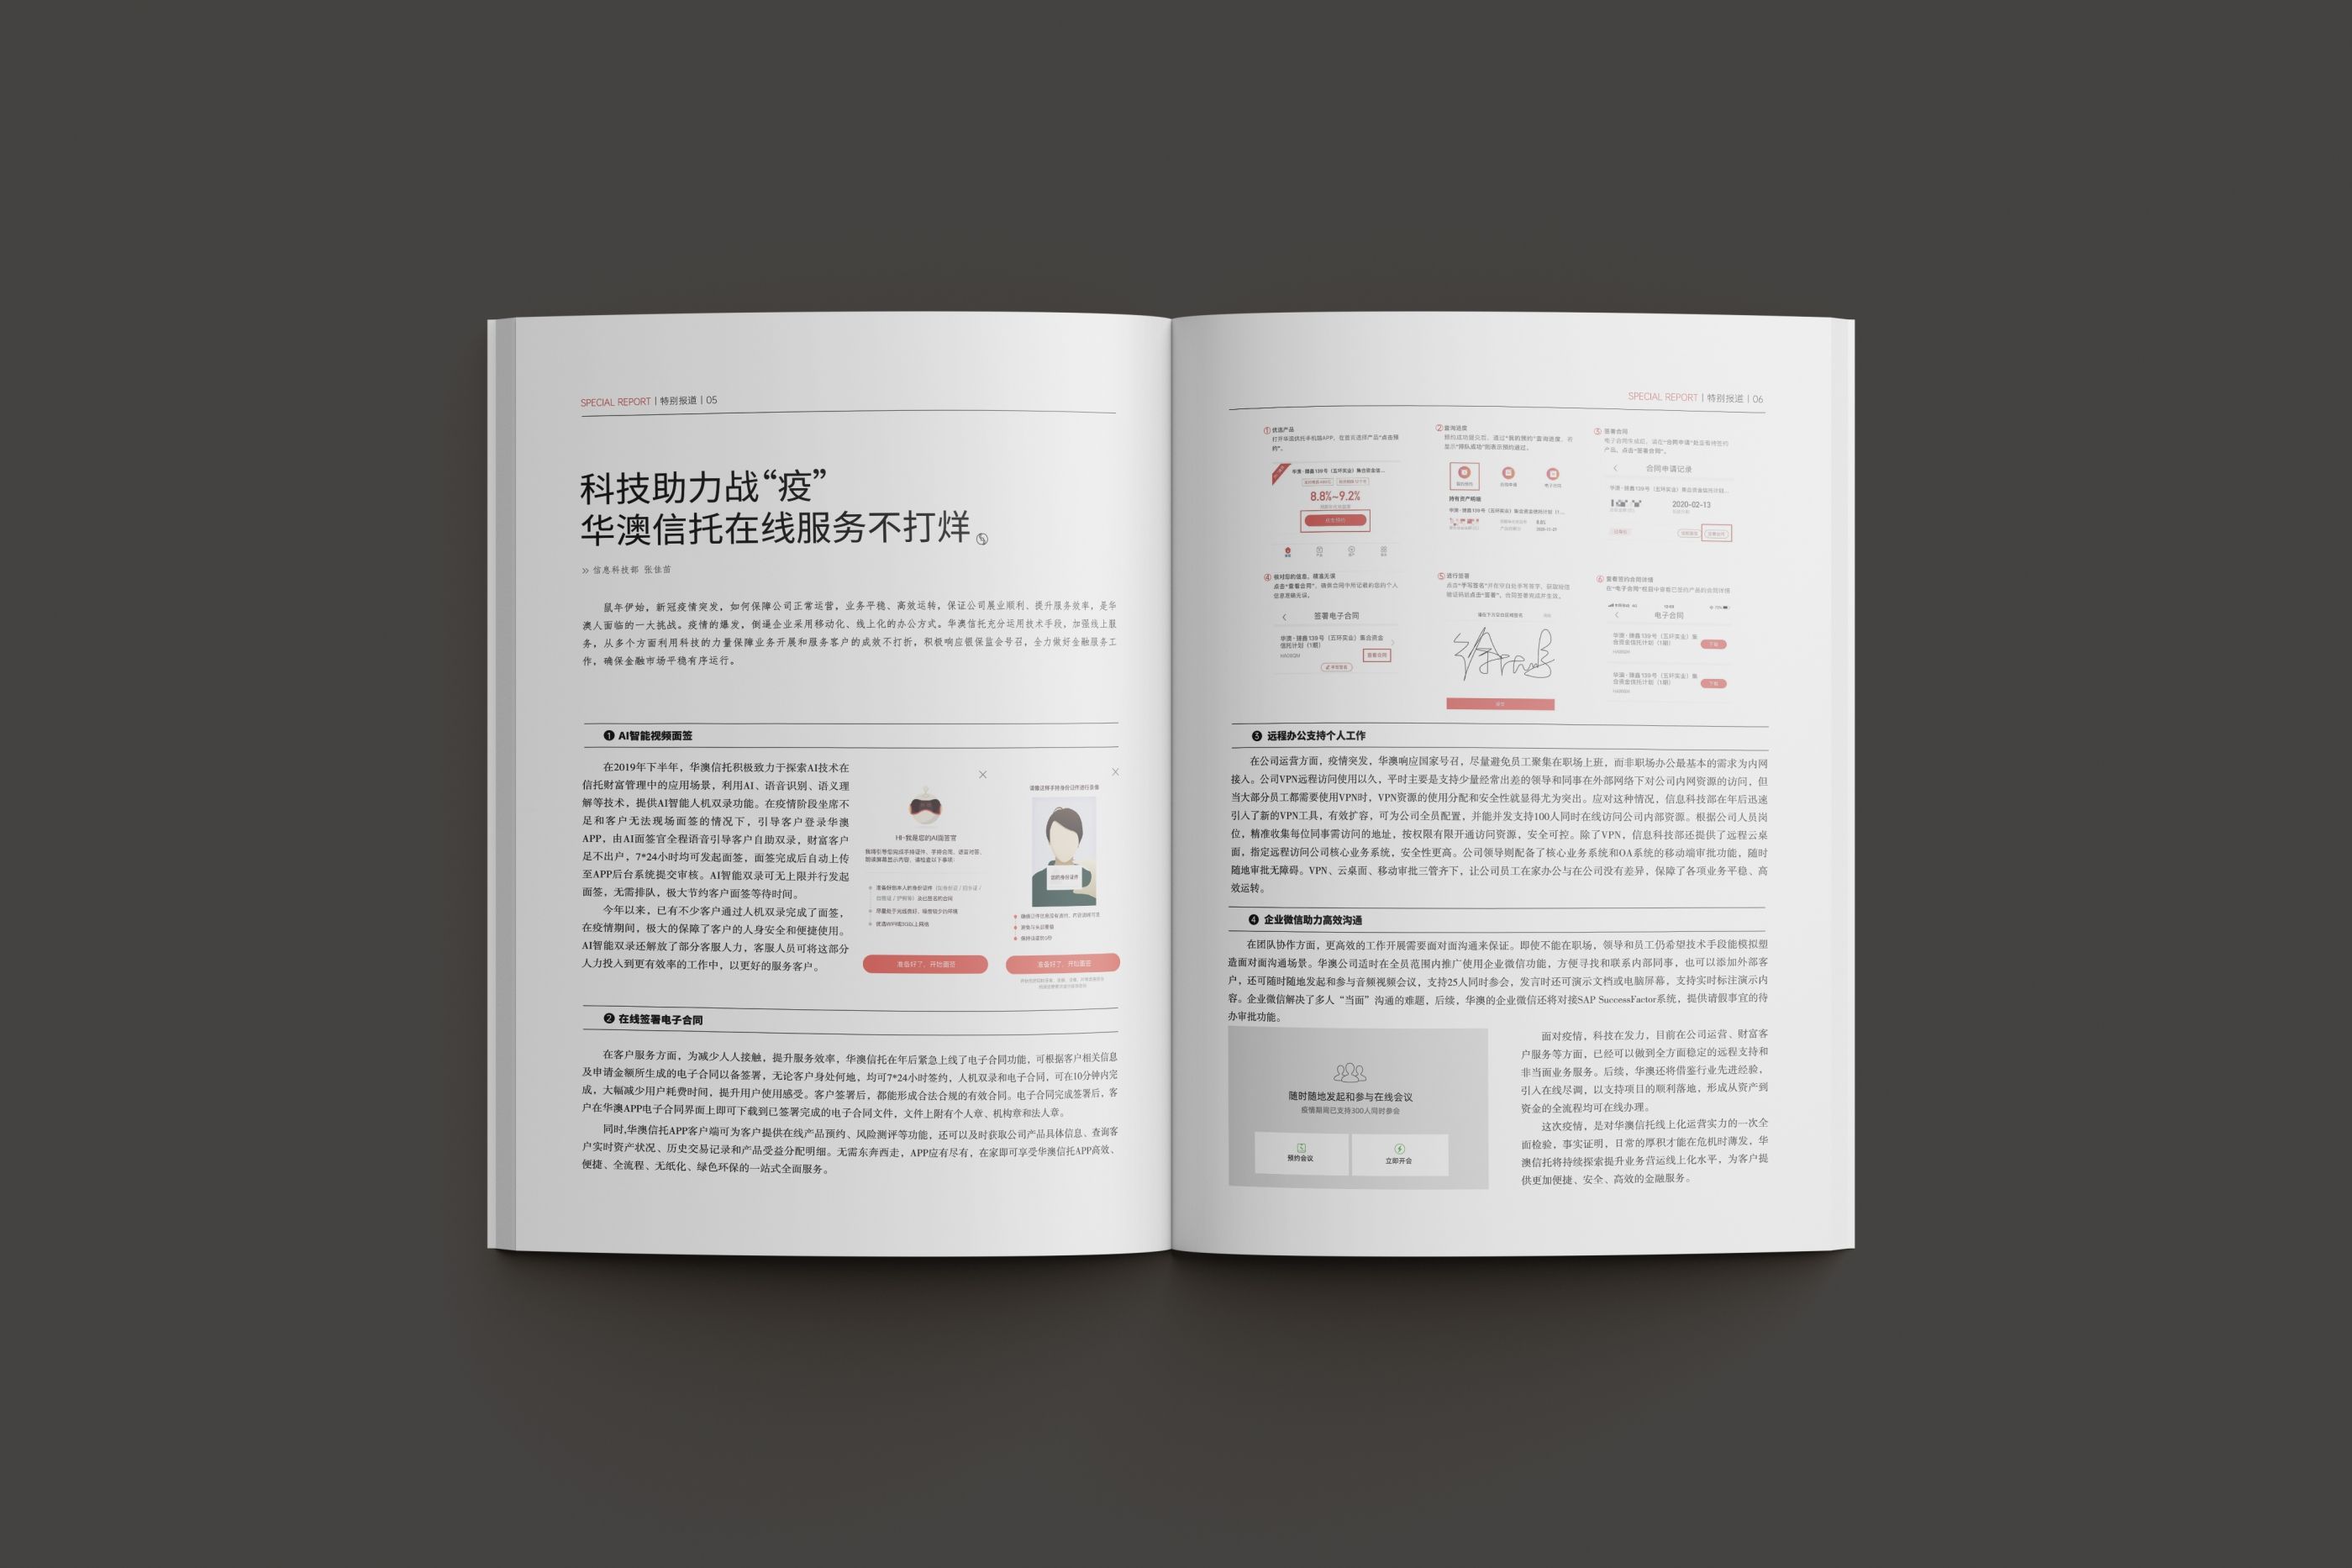 华澳信托——产品画册设计 飞特网 会员原创画册设计